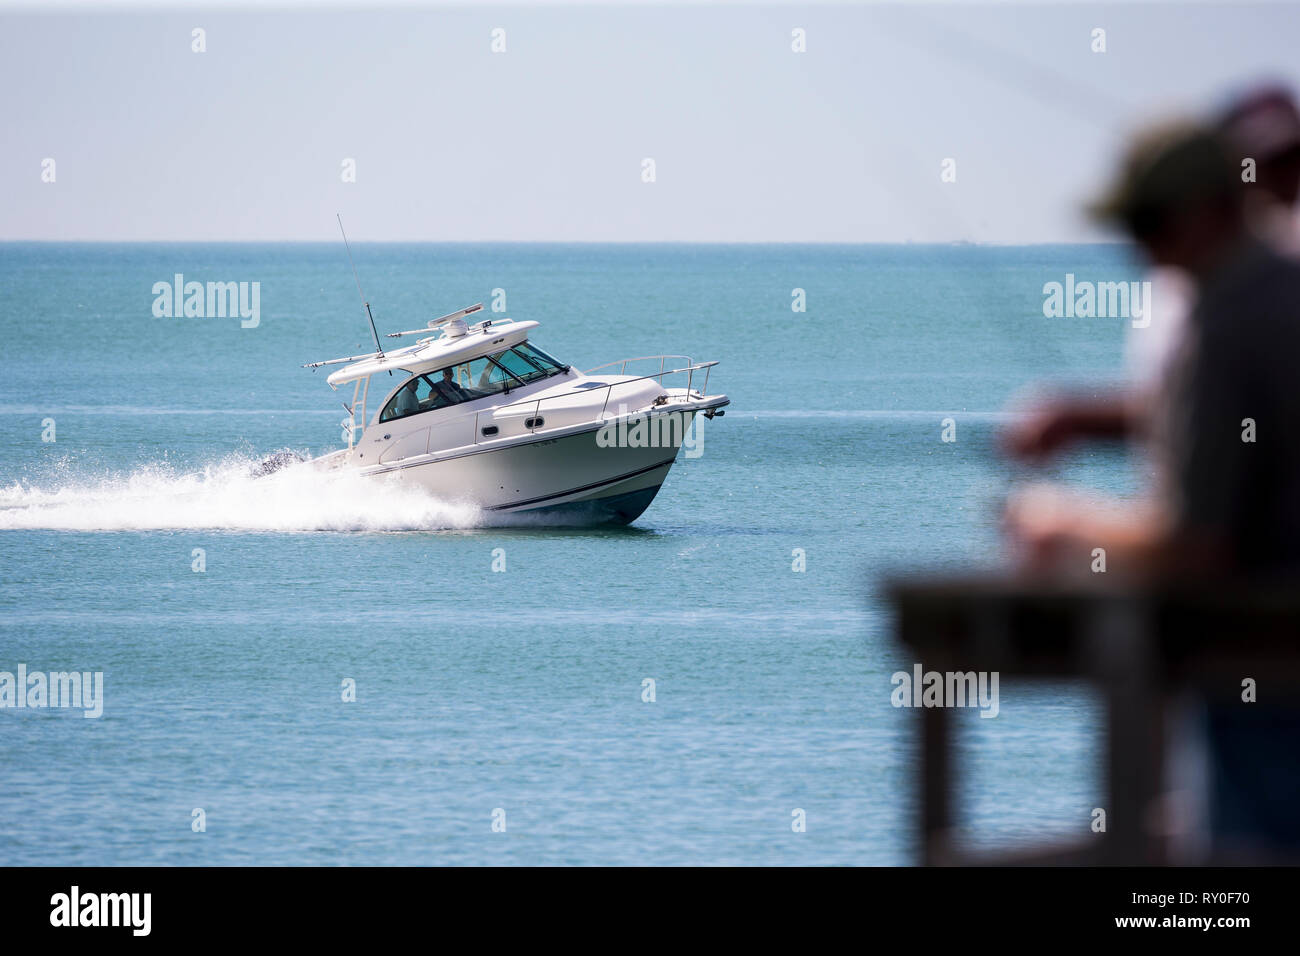 Ein Sportboot auf dem Golf von Mexiko faehrt Vorbei Am Pier bei THEMENBILD Florida, 06.02.2017 Bildnachweis: Mario Hommes / Fotografía HH Foto de stock